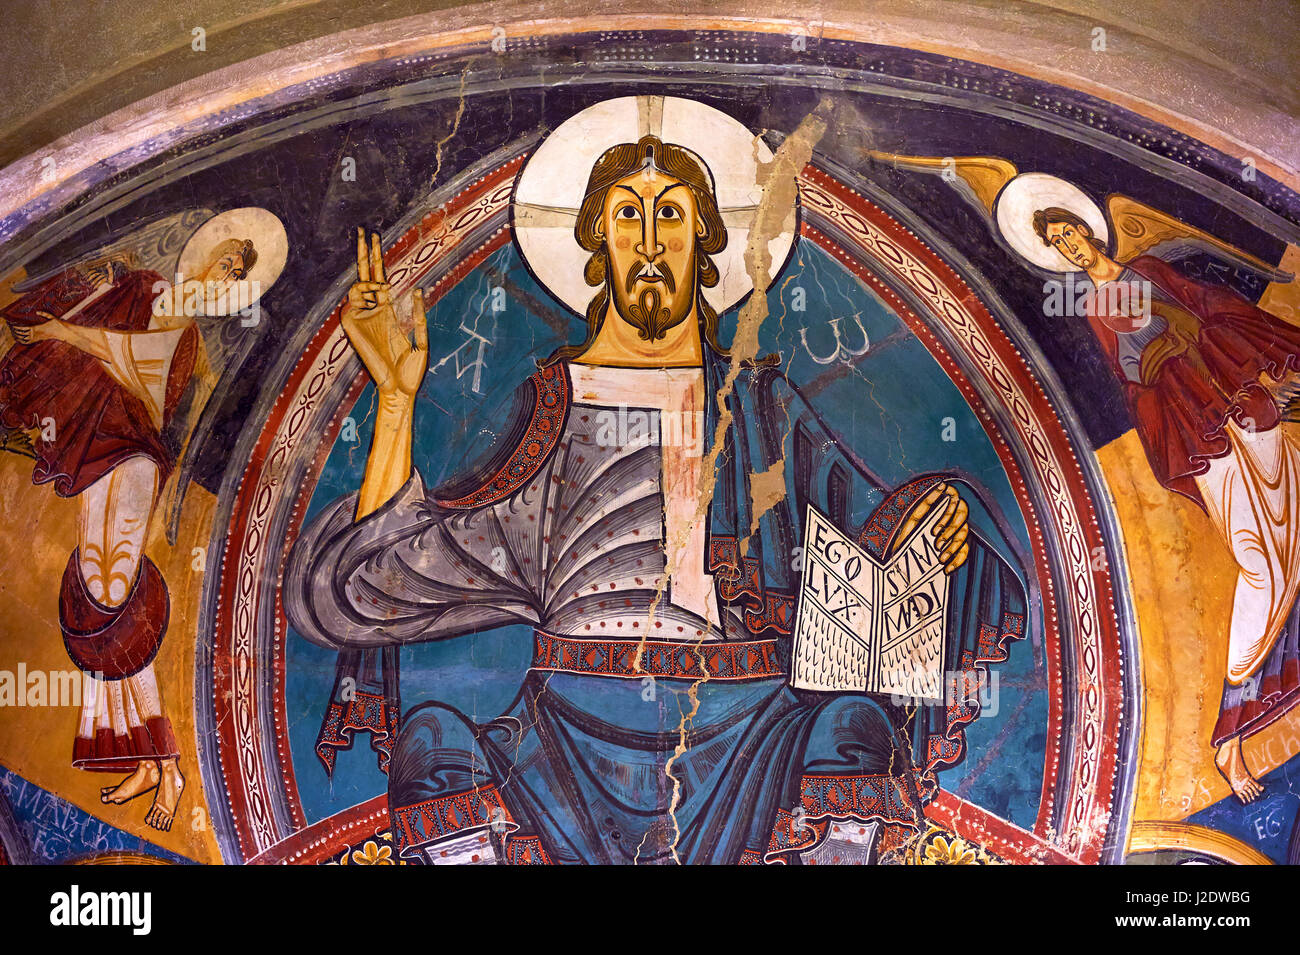 Romanische Fresken aus der Kirche von Sant Clement de Taull, Vall de Boi, Alta Ribagorca, Spanien. Gemalt um 1123 Darstellung Christus Pantokrator oder Stockfoto